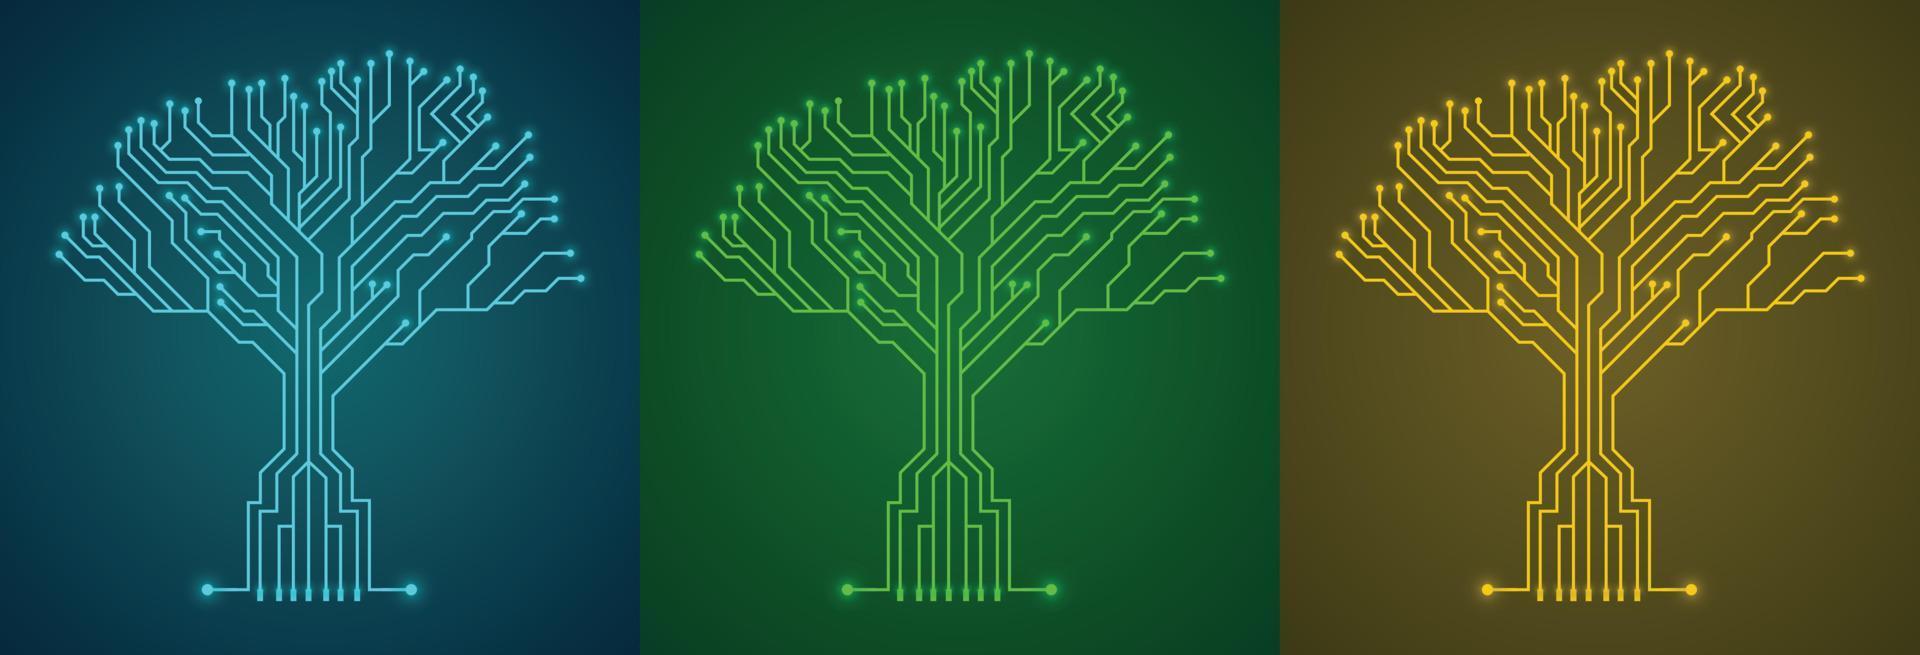 krets styrelse träd uppsättning med annorlunda färger, teknologi bakgrund begrepp vektor illustration